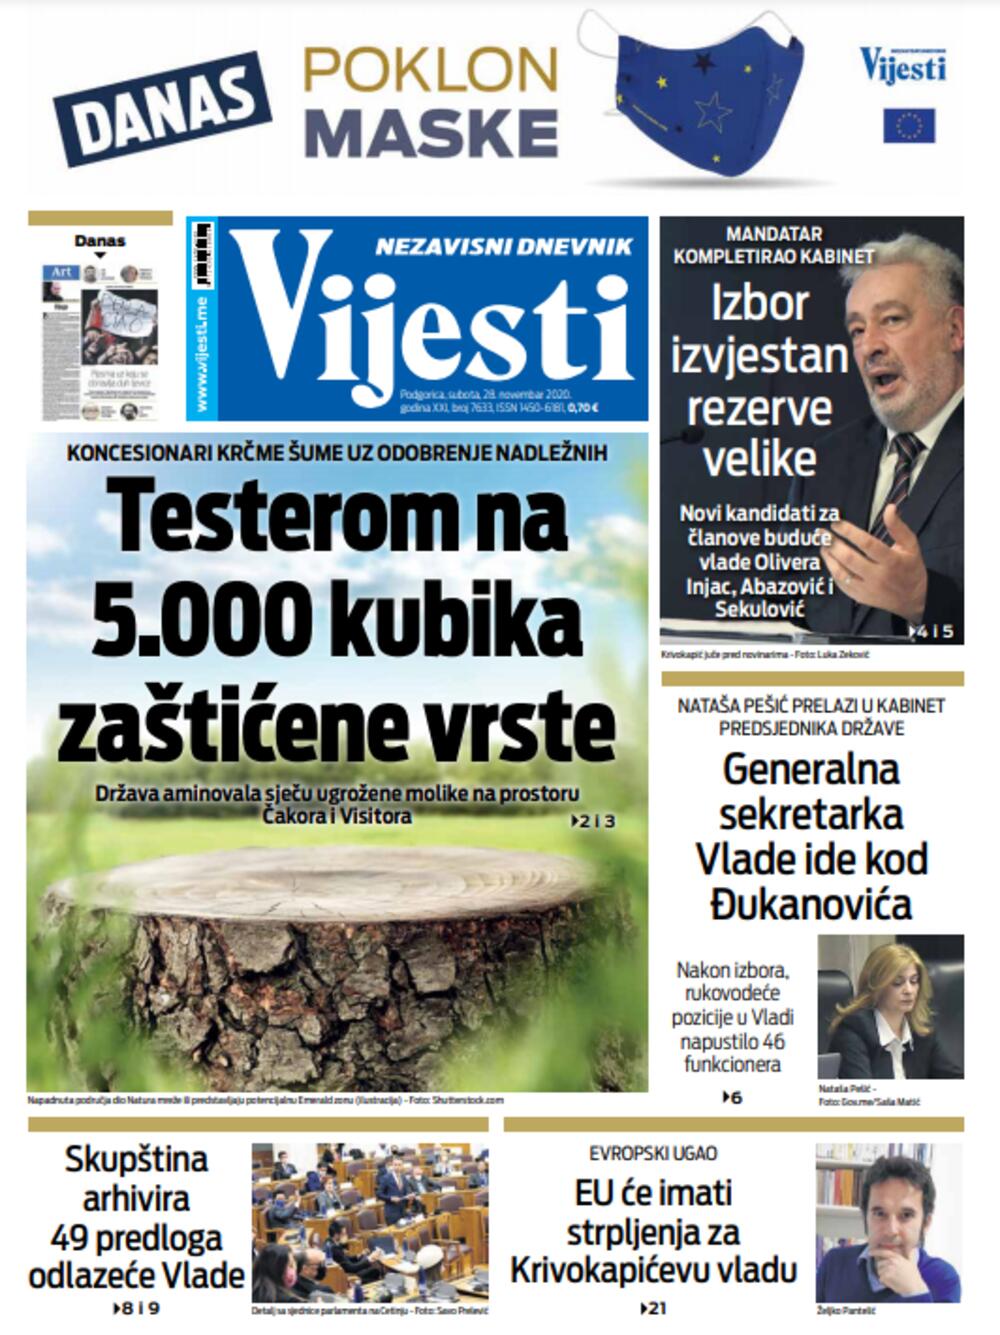 Naslovna strana "Vijesti" za 28. novembar, Foto: Vijesti